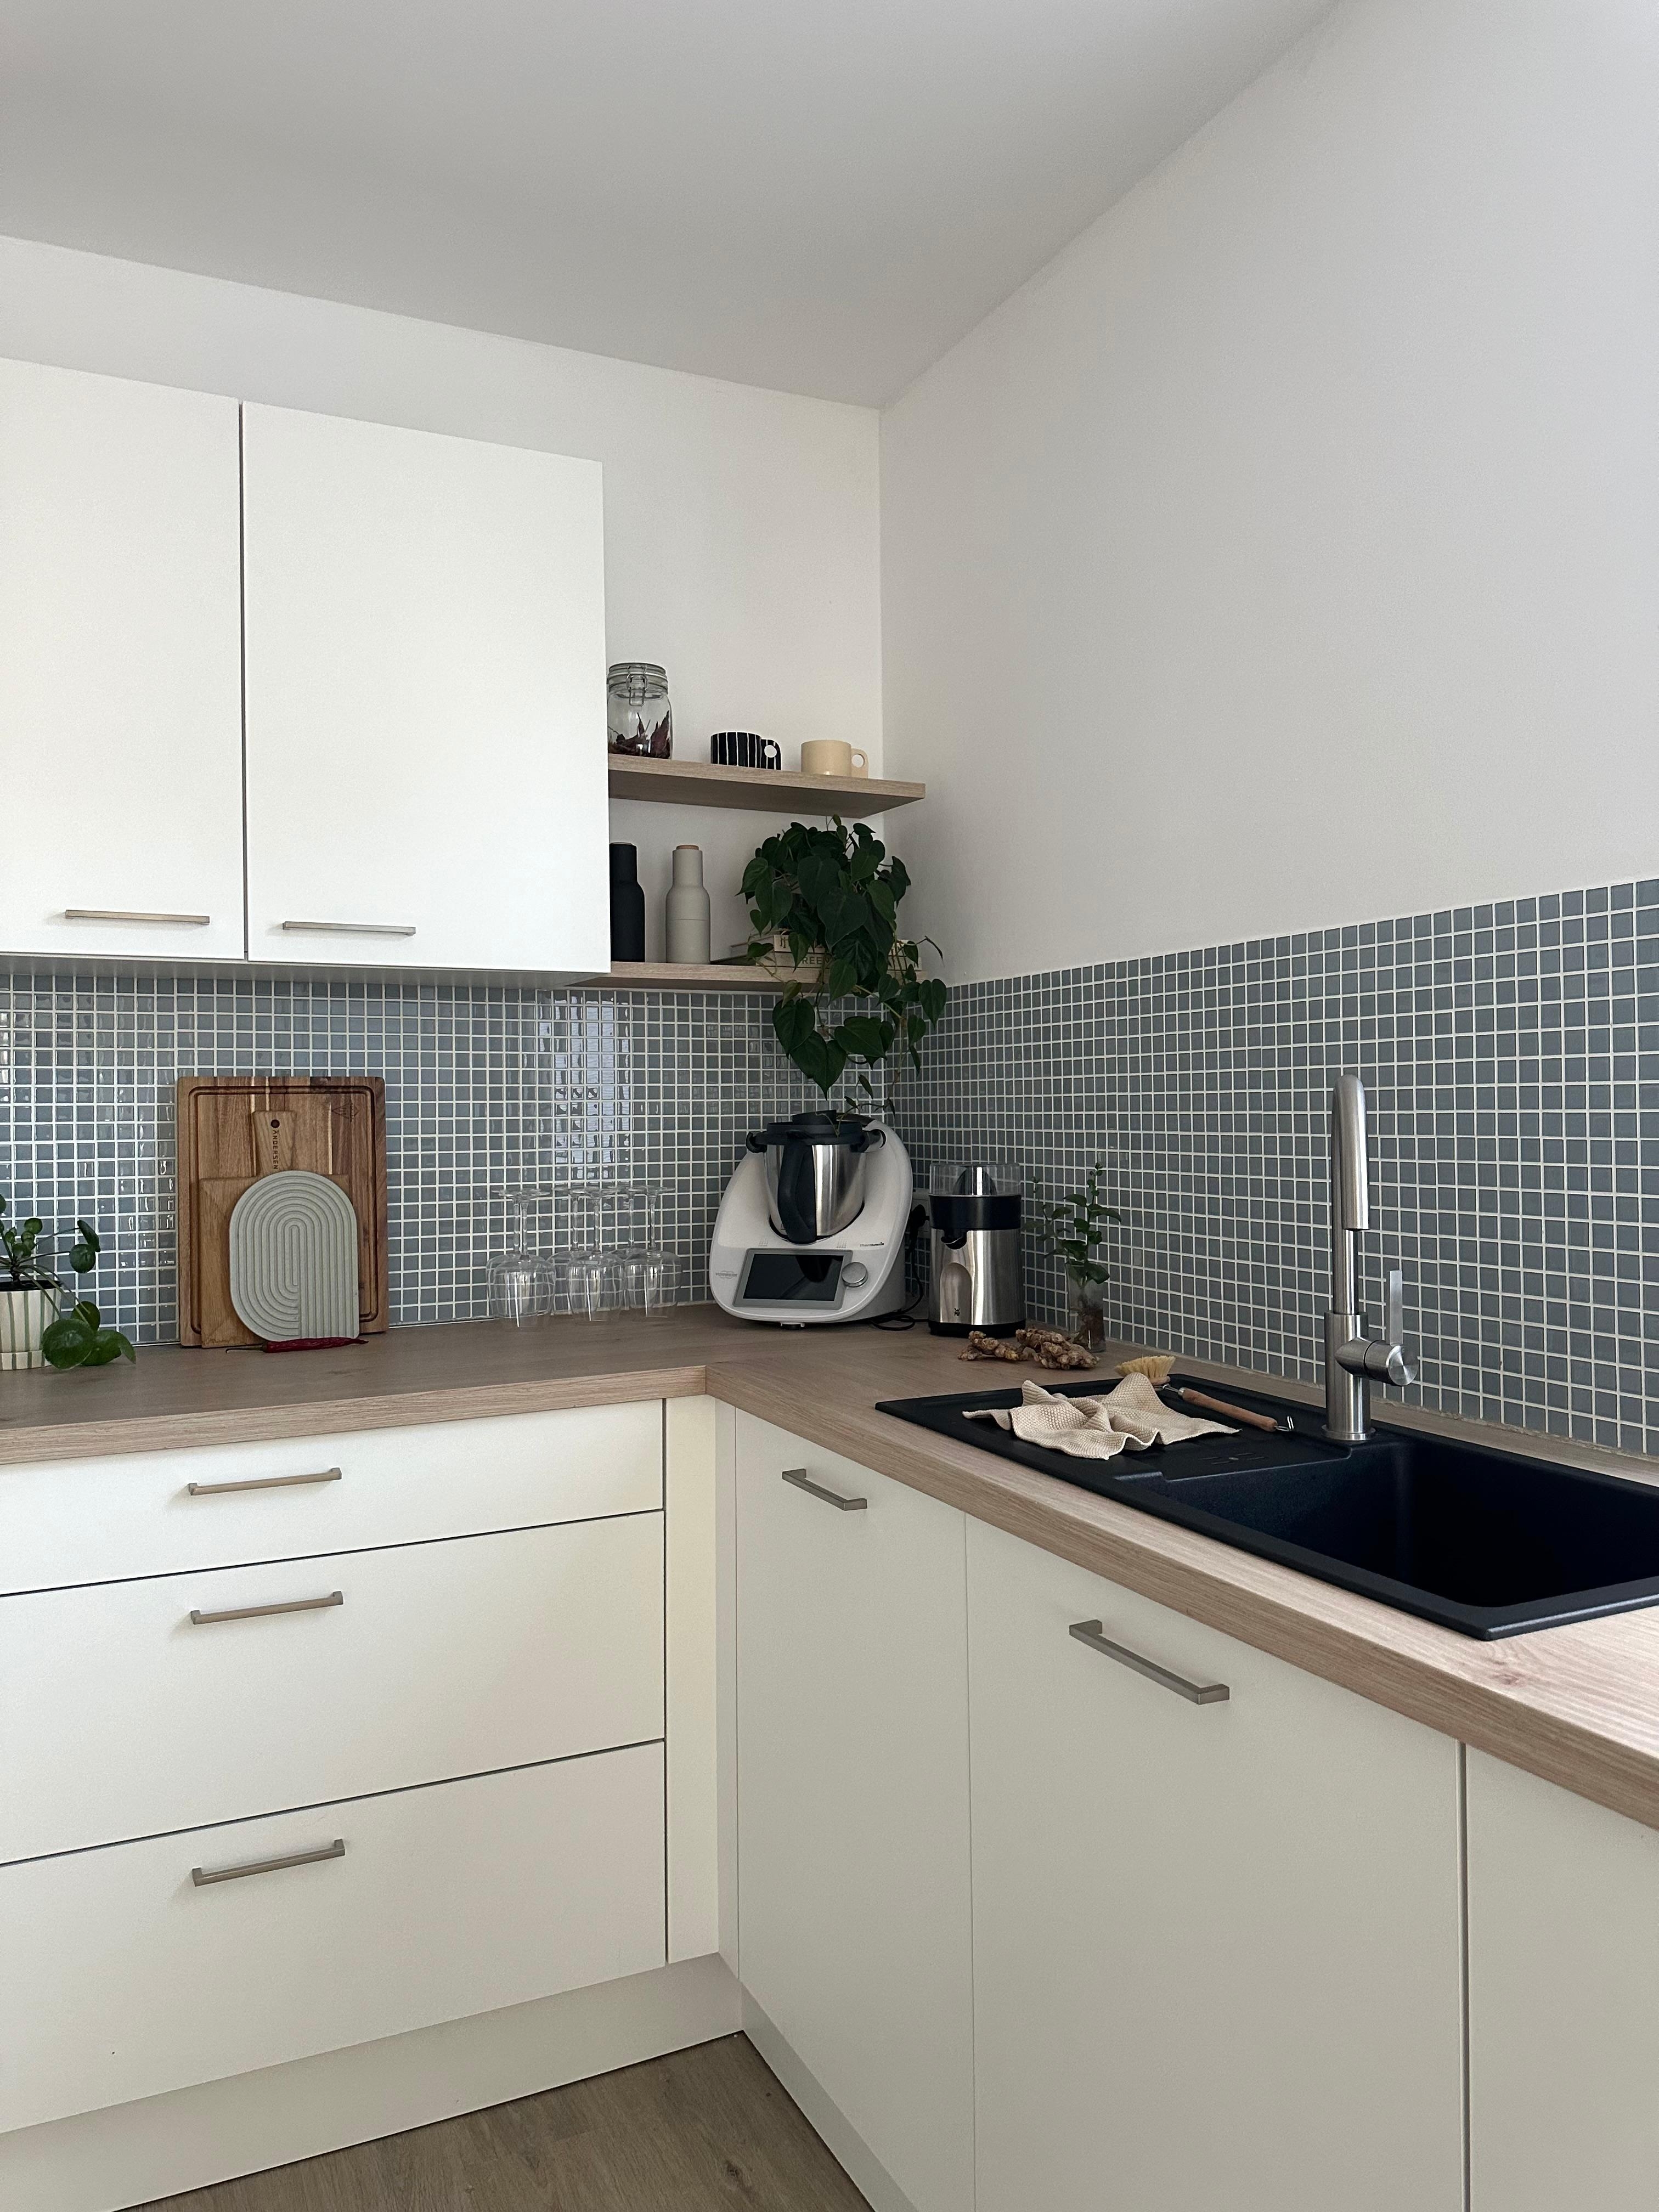 #weißeküche #küchenliebe #couchliebt #küchenbretter #fliesenspiegel #mosaikfliesen #küchenregal #pflanzenliebe